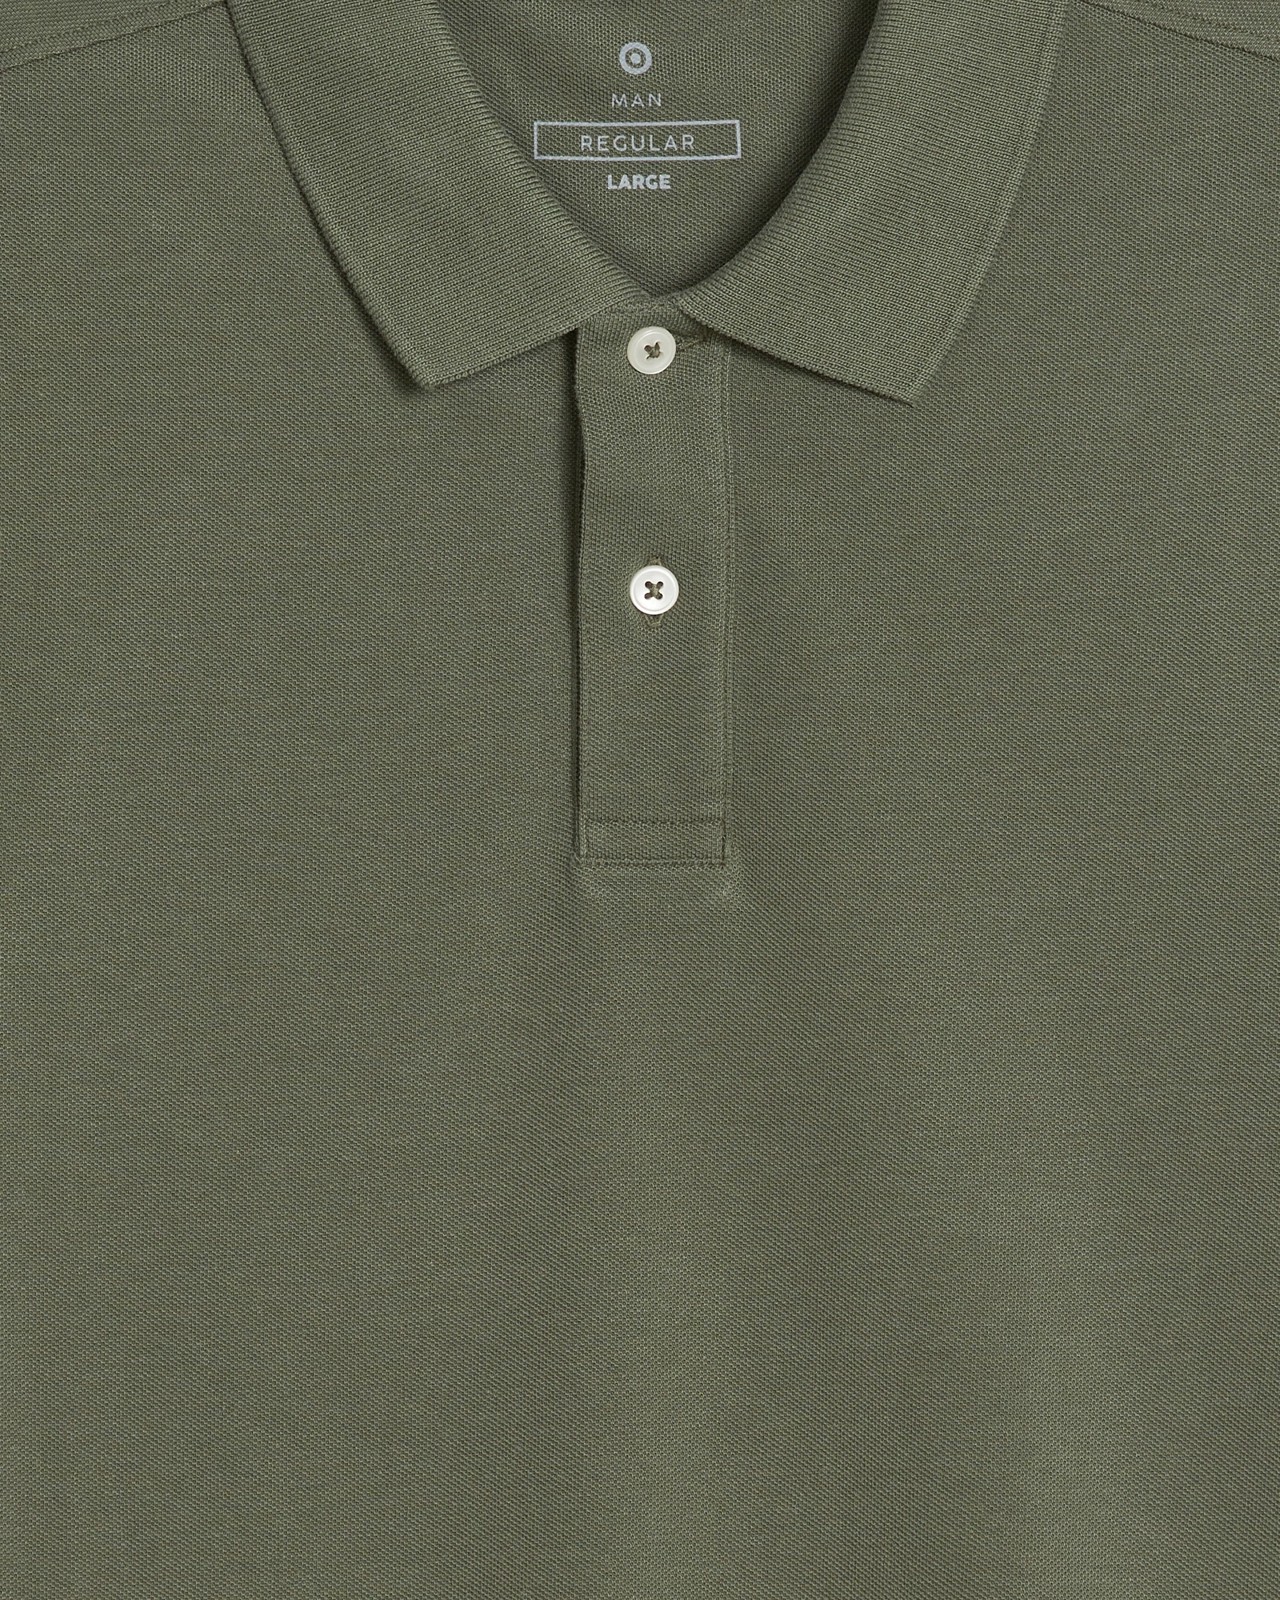 Pique Polo Shirt - Khaki | Target Australia